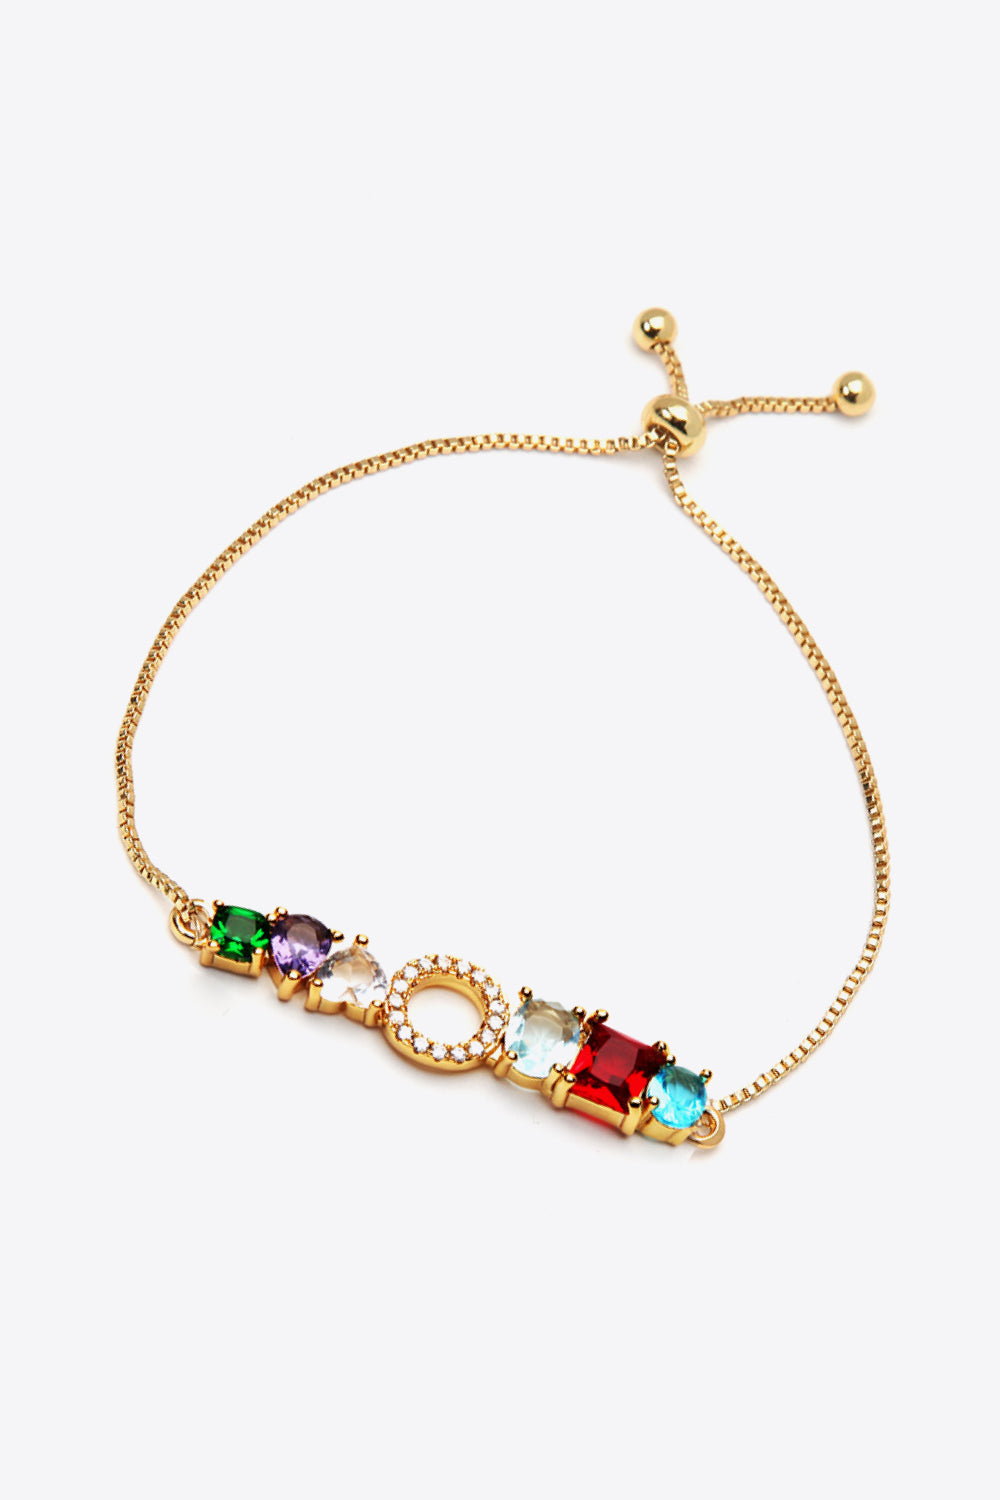 K to T Zircon Bracelet - Women’s Jewelry - Bracelets - 14 - 2024